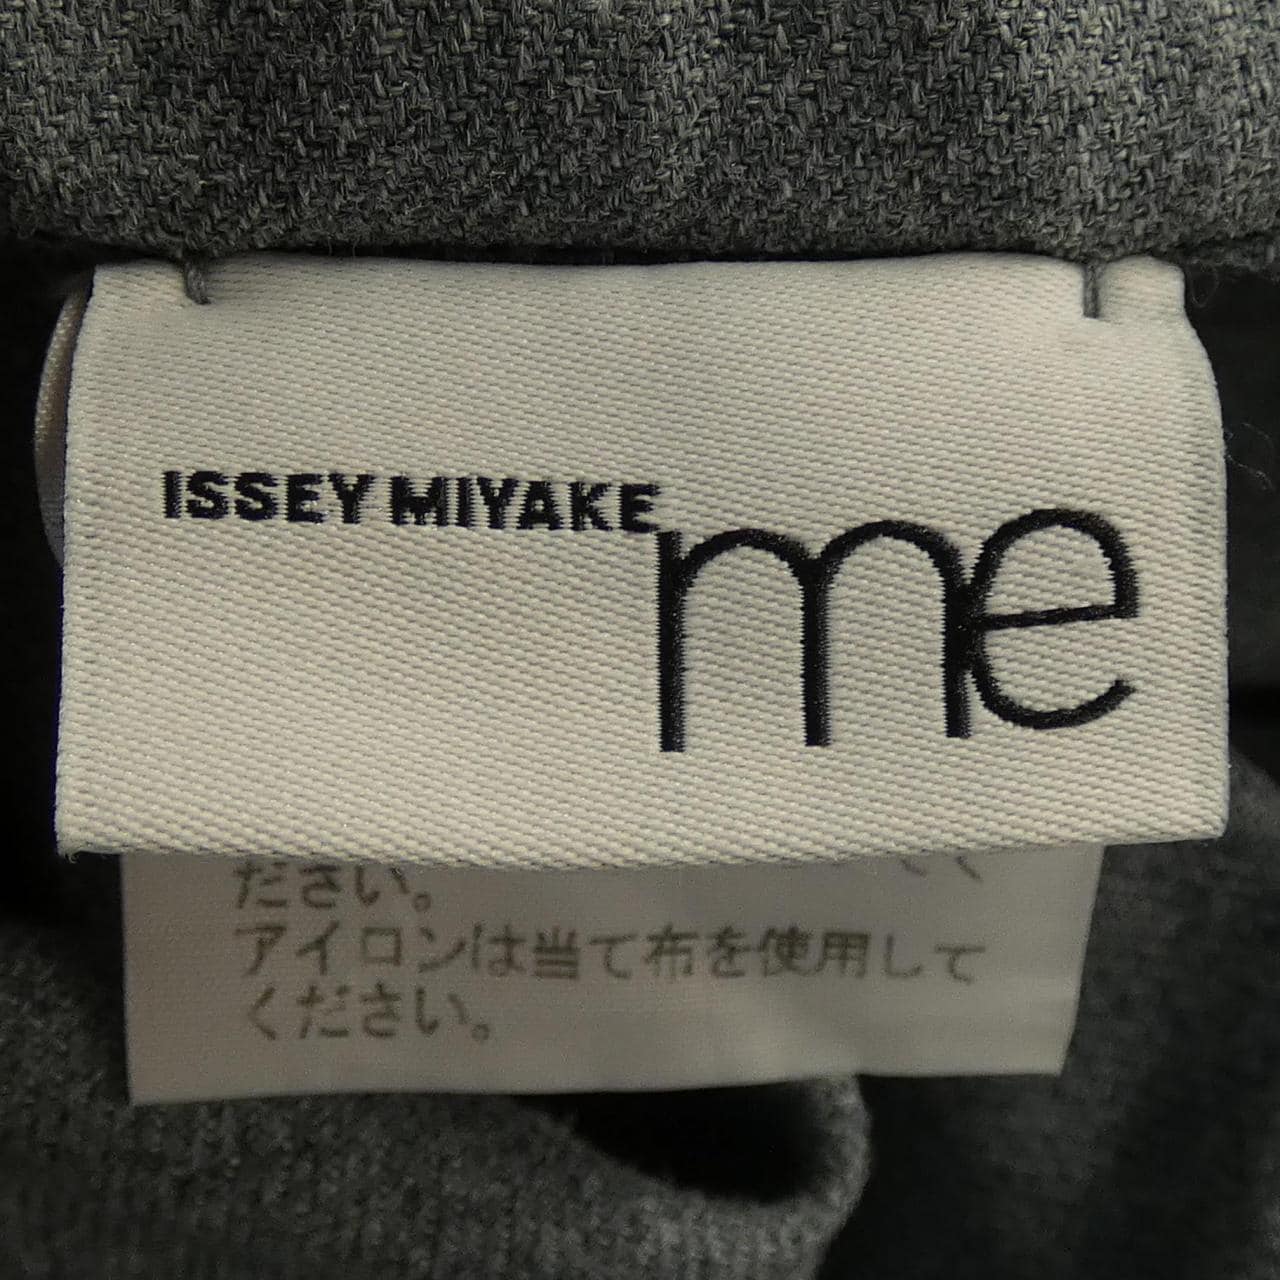 MISSEY MIYAKE裤子